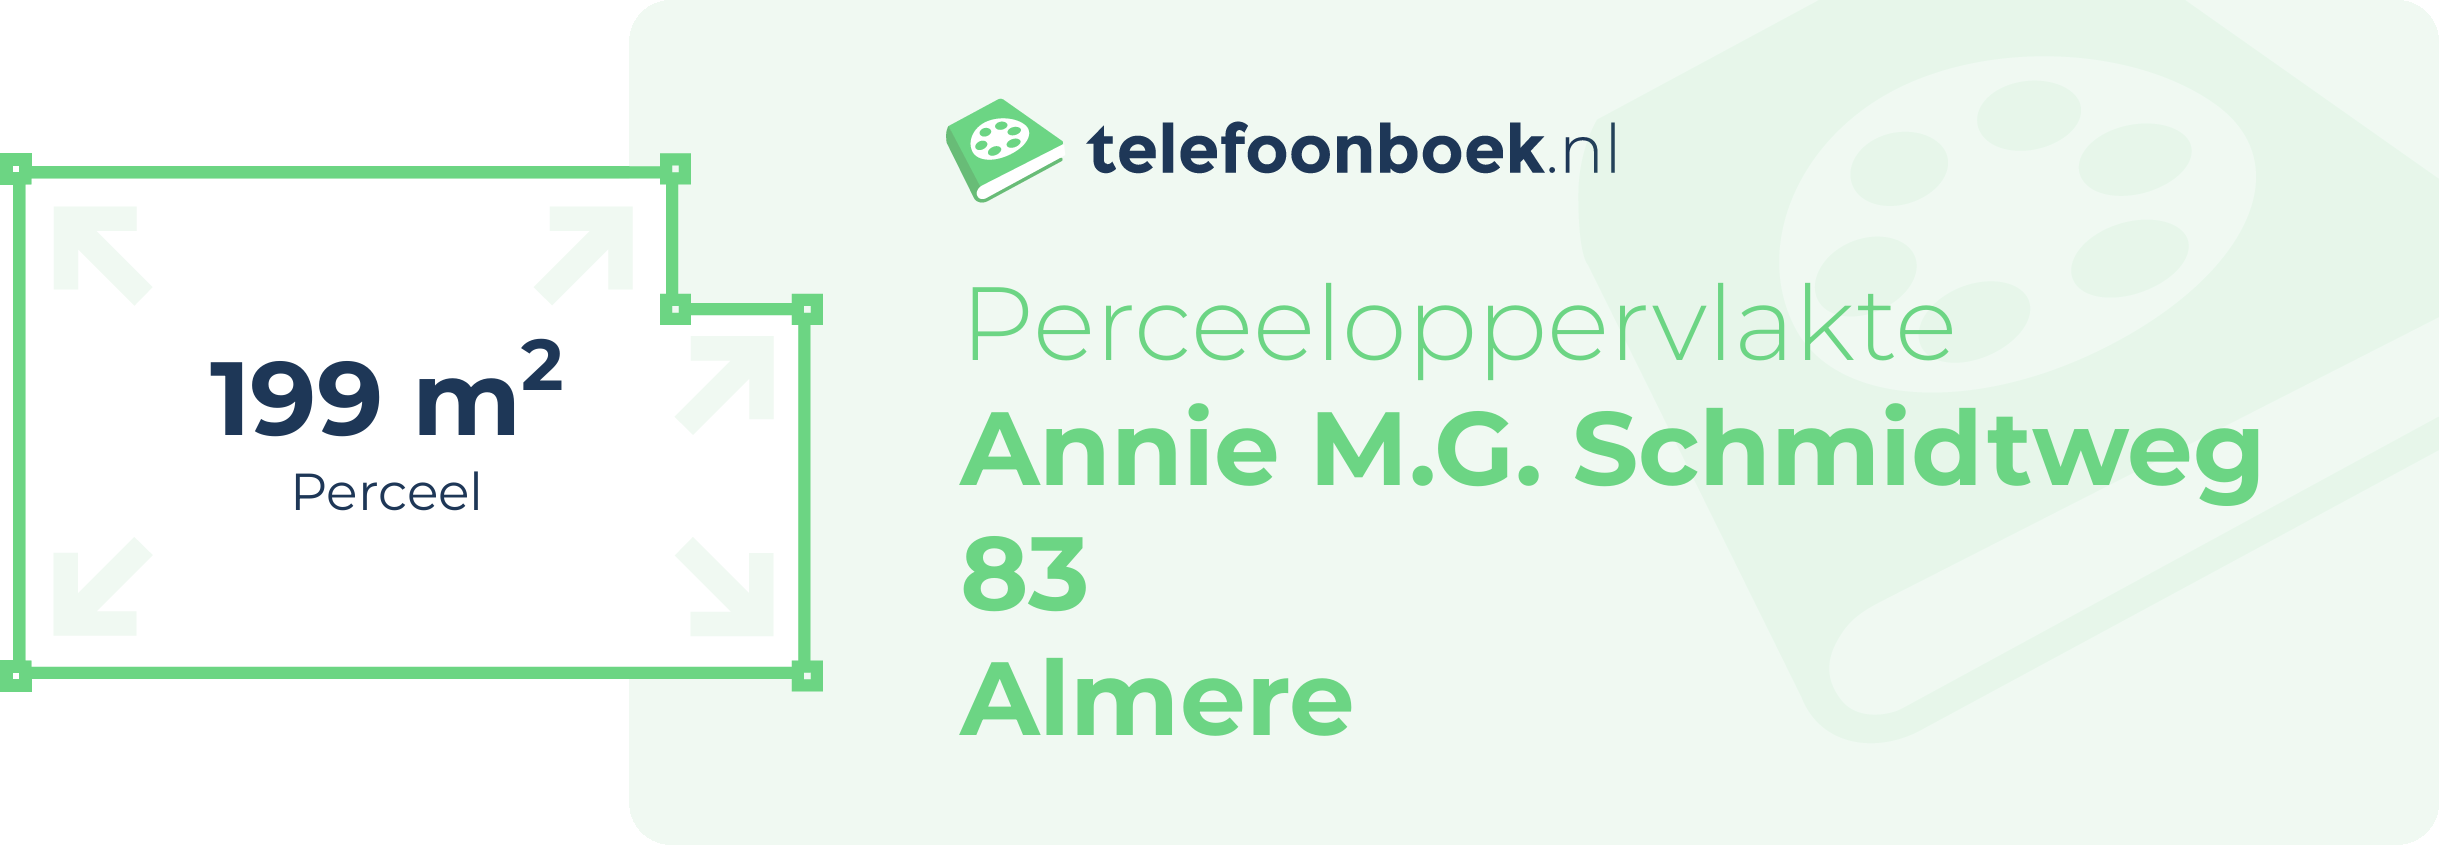 Perceeloppervlakte Annie M.G. Schmidtweg 83 Almere